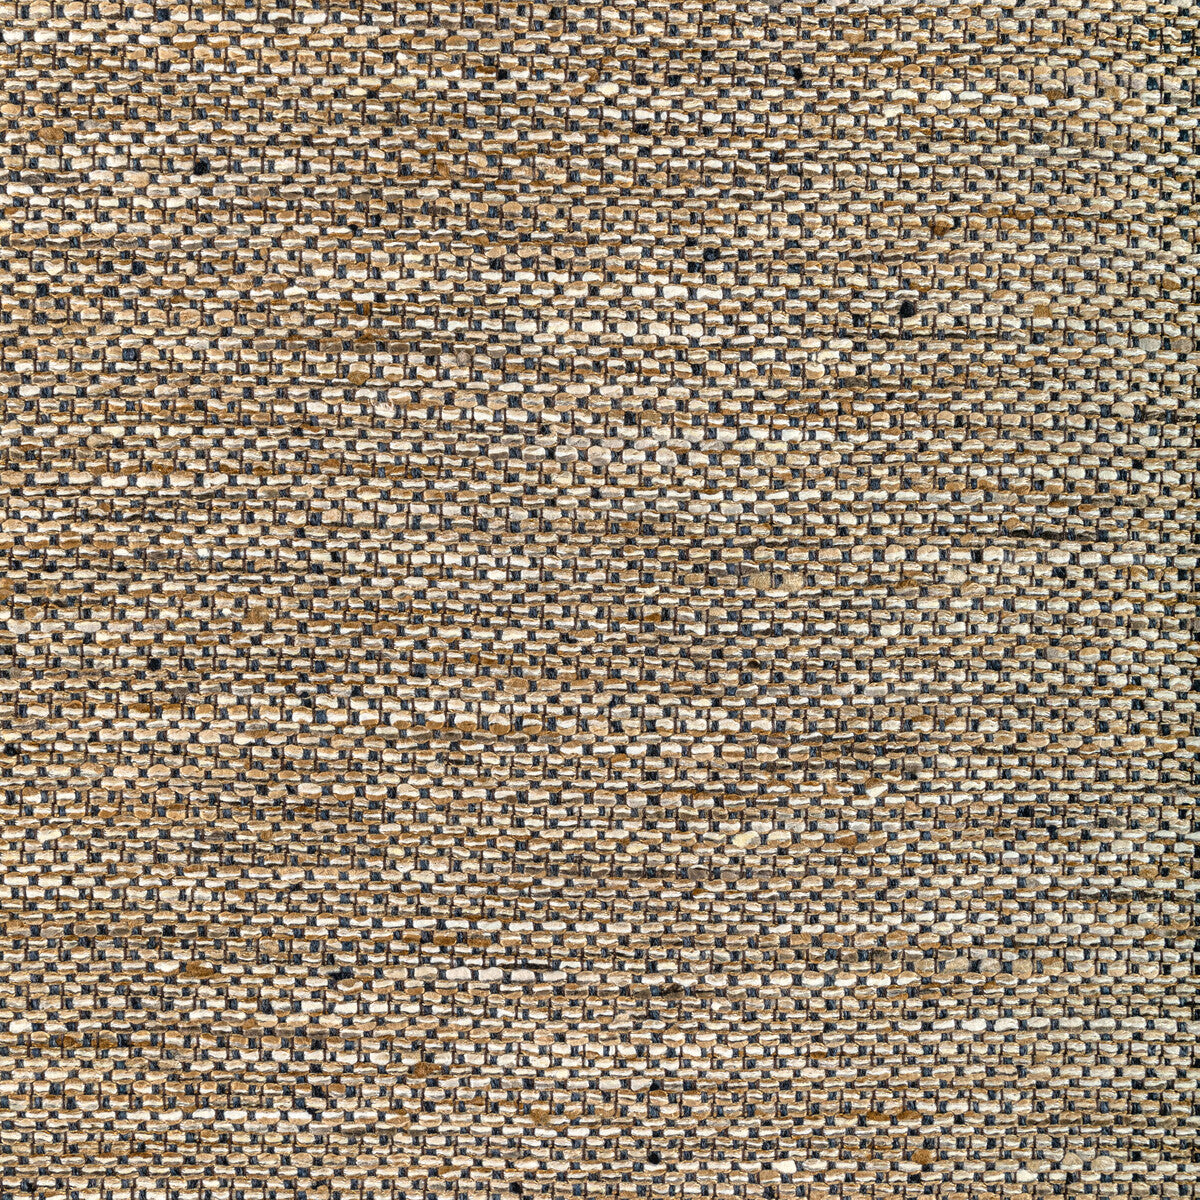 Kravet Basics fabric in 36587-816 color - pattern 36587.816.0 - by Kravet Basics